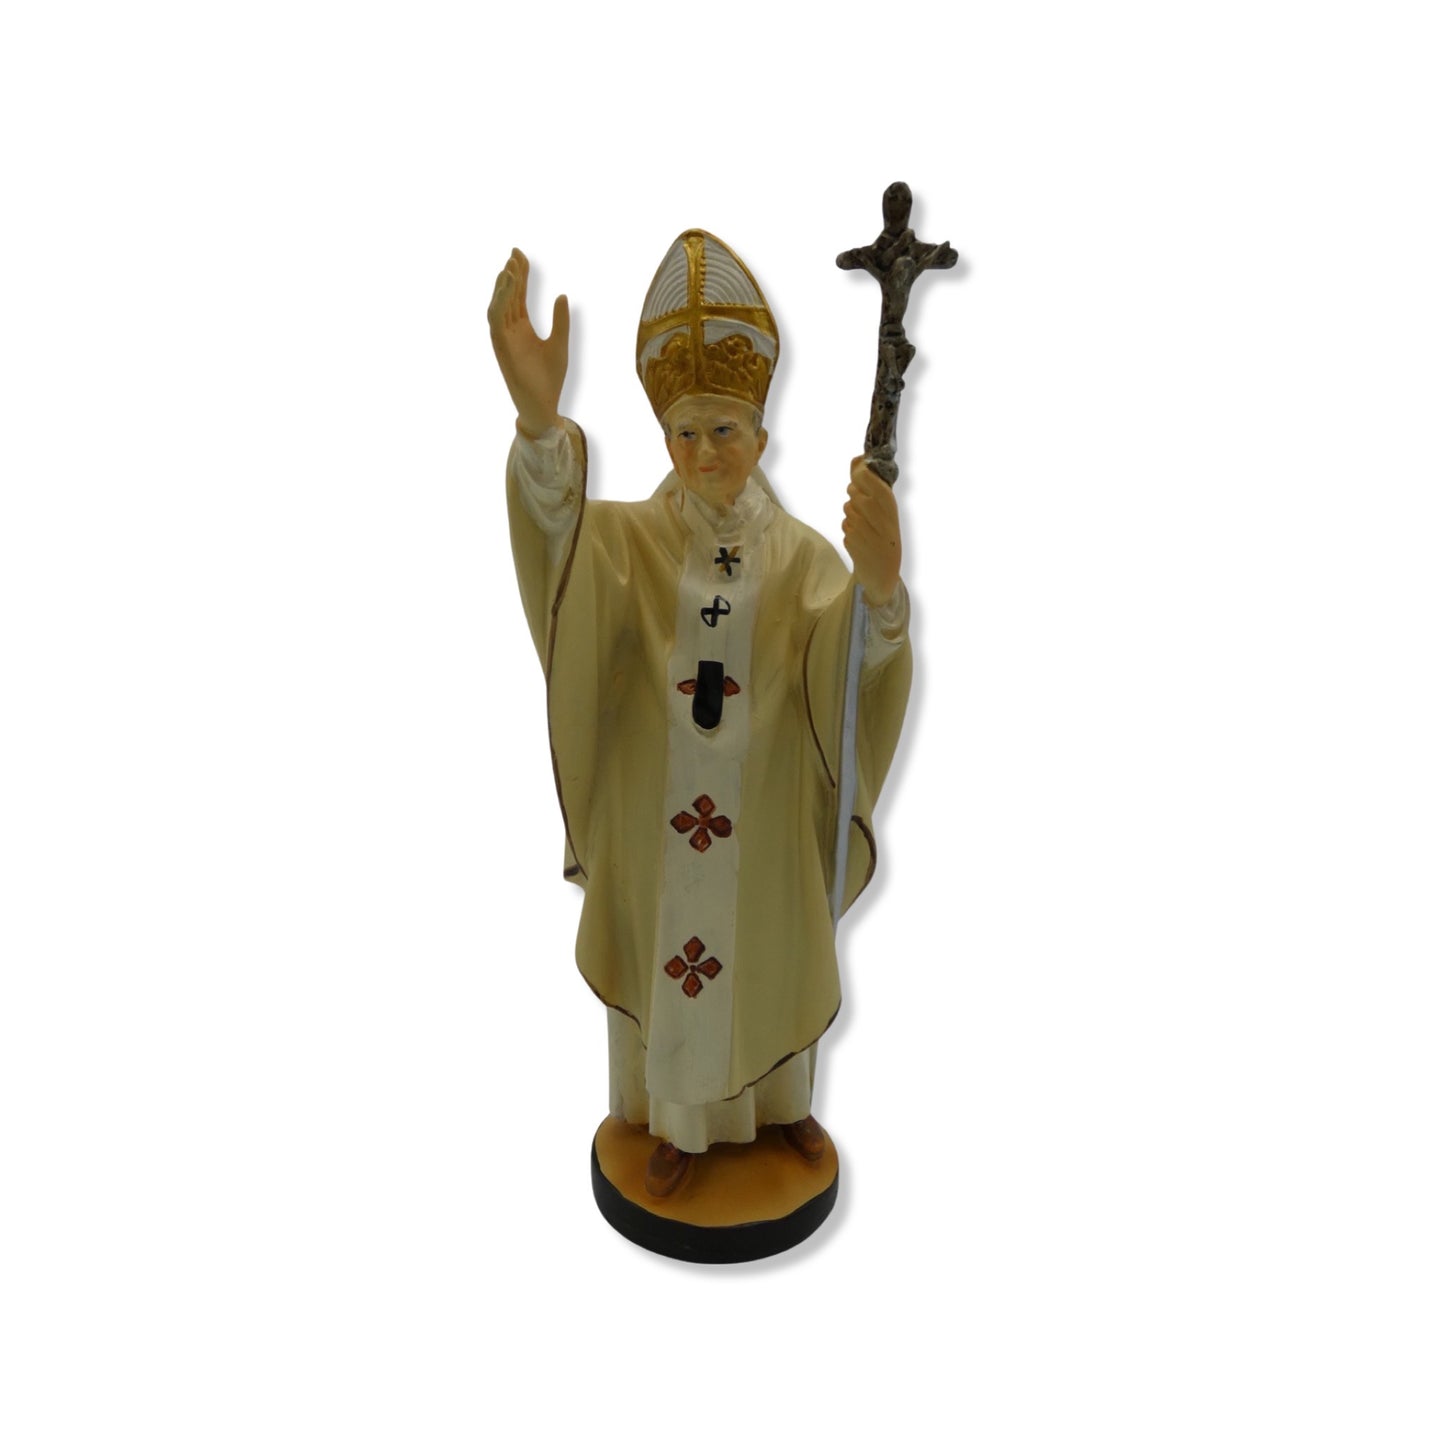 St. John Paul II Blessing Statue